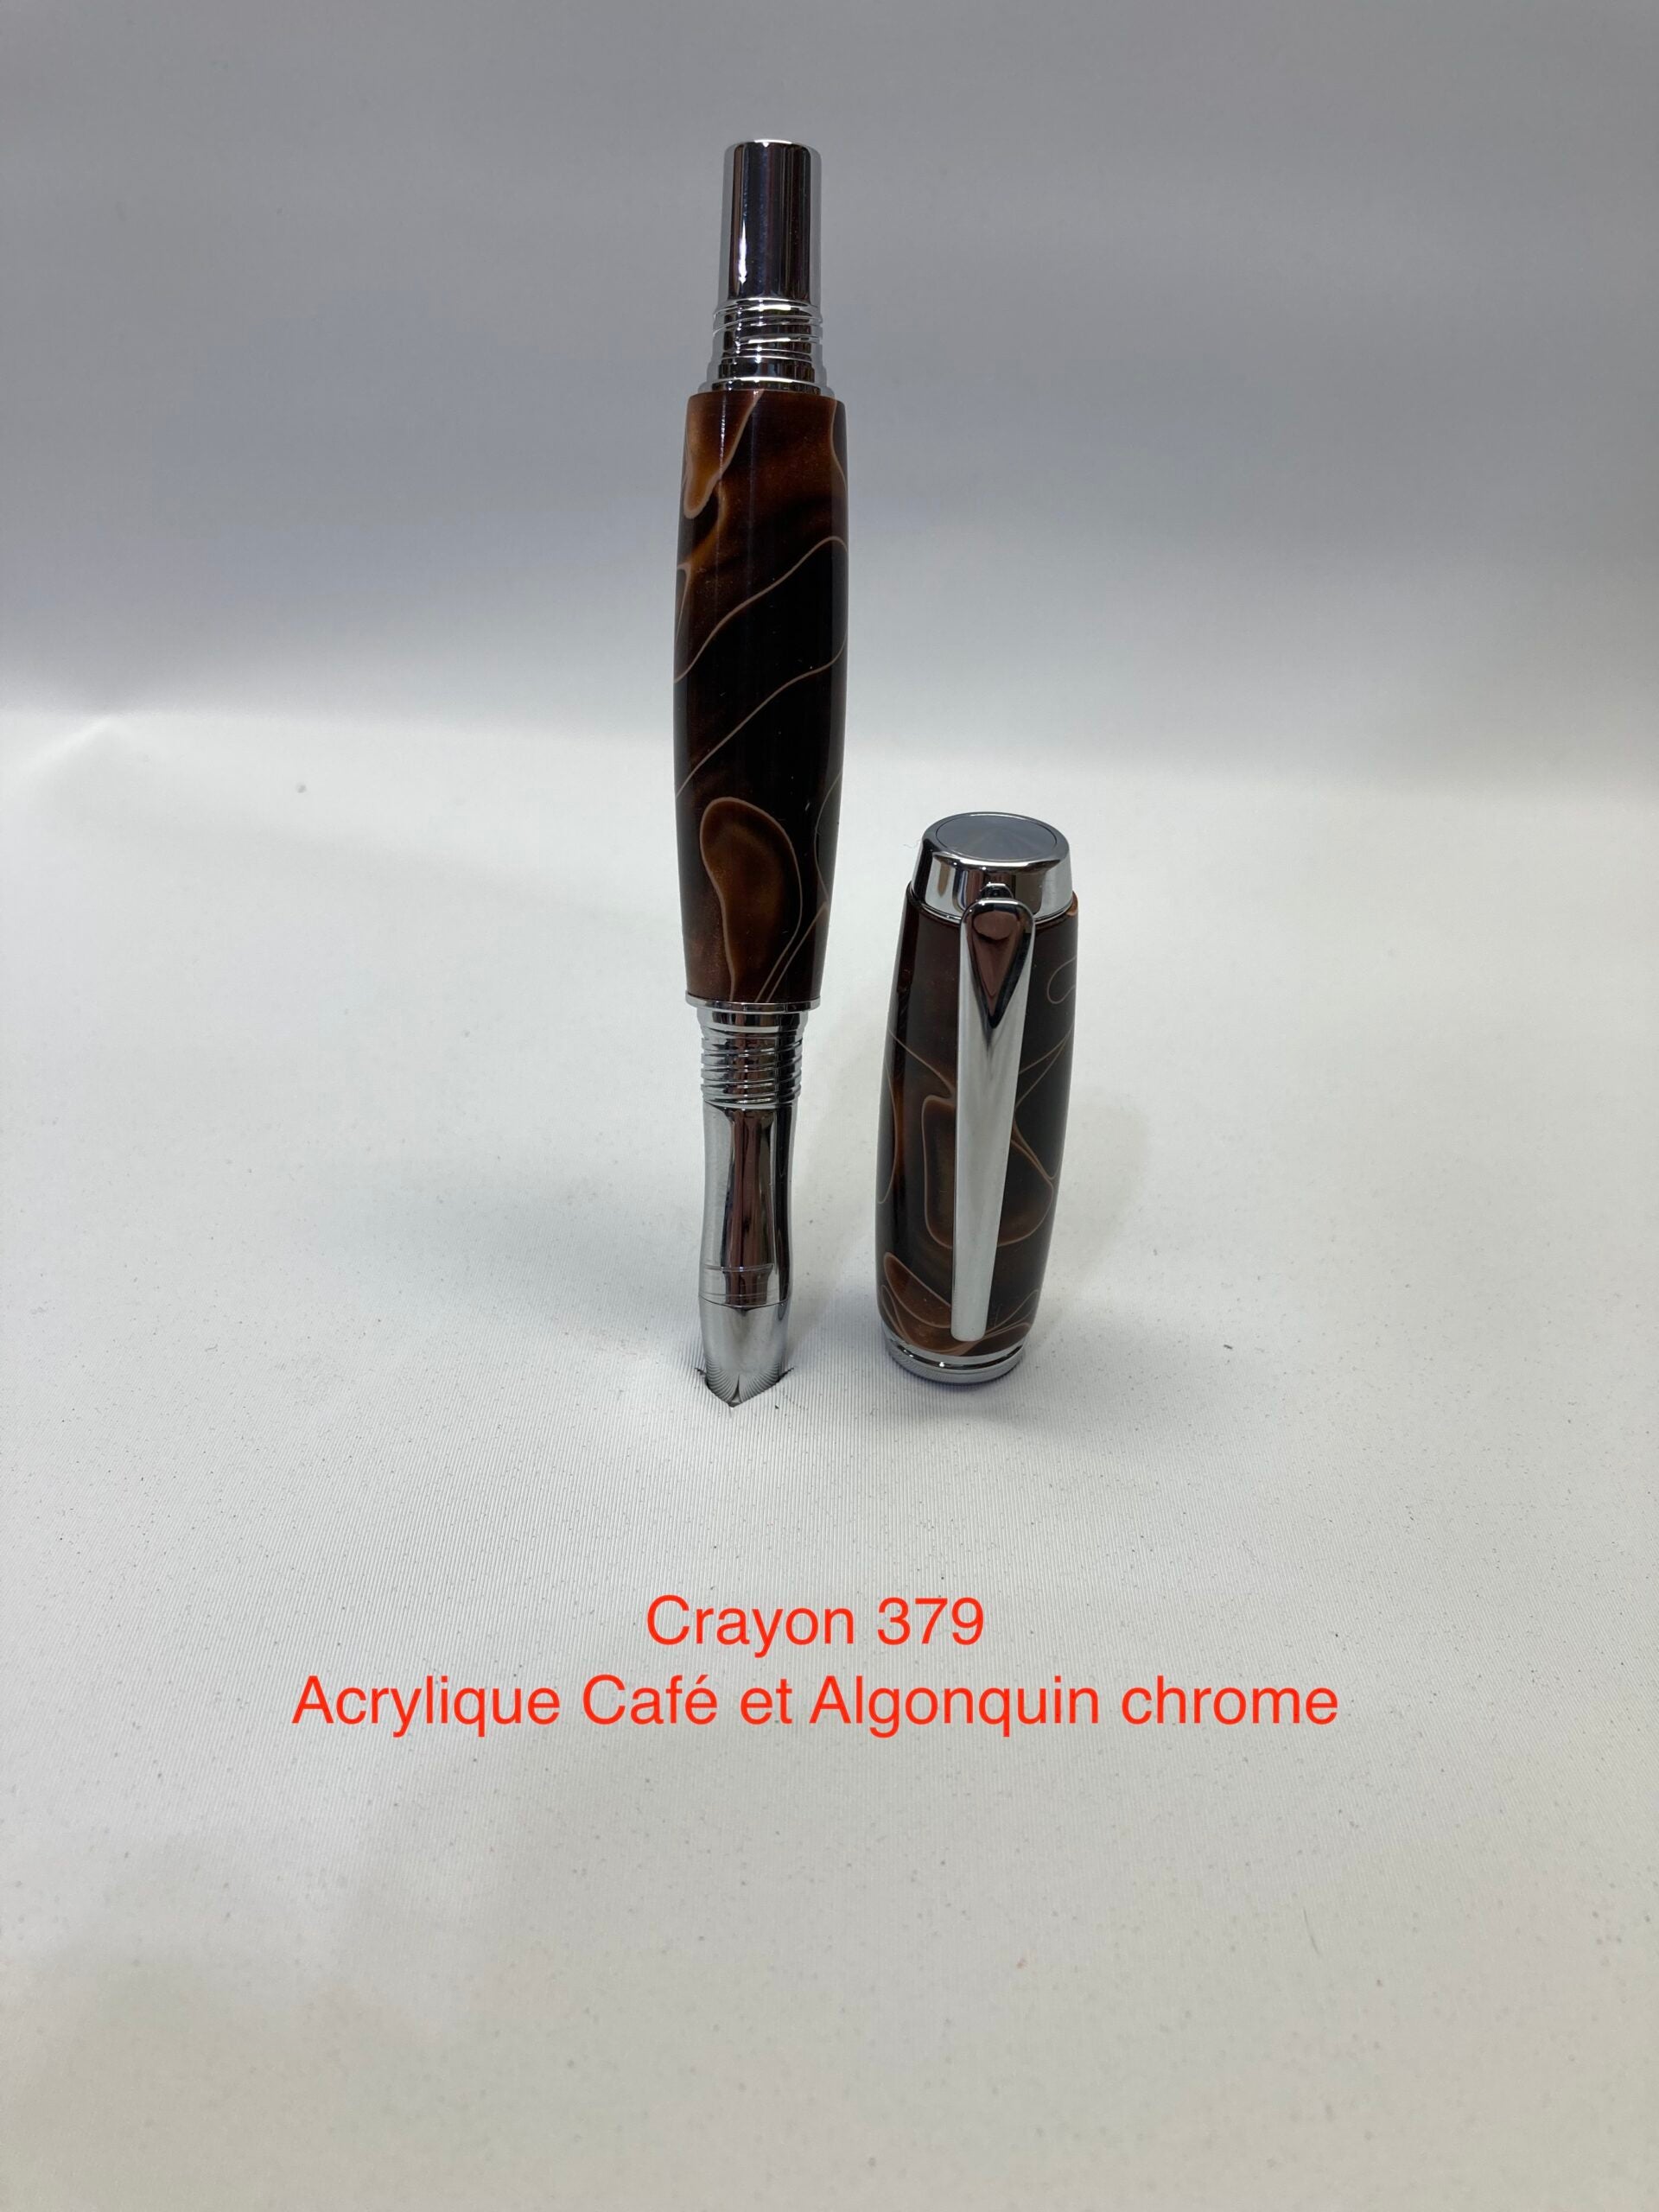 Algonquin, Acrylique café et chrome